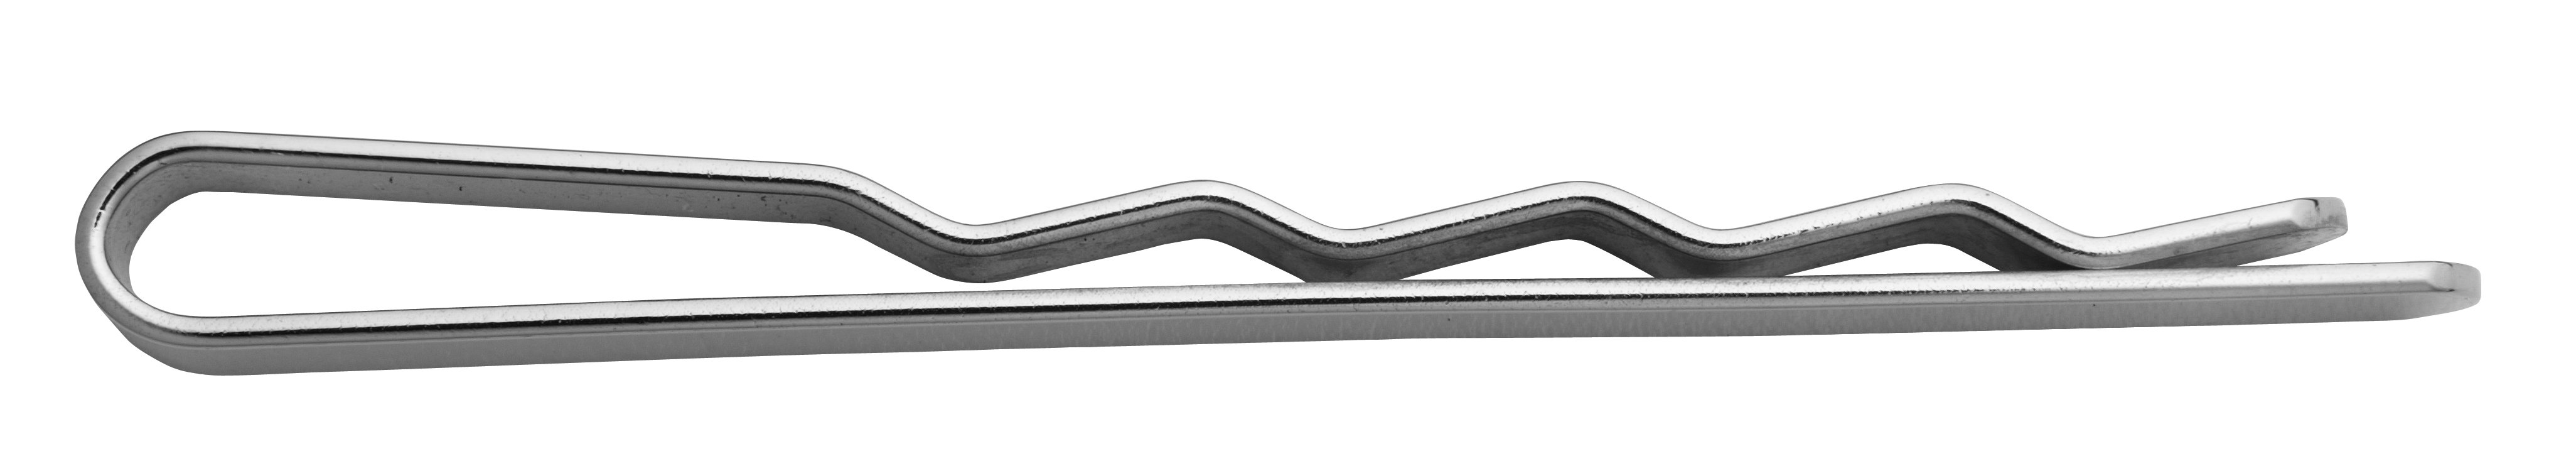 Krawattenschieber Silber 925/-, L 55,00 x B 5,20mm